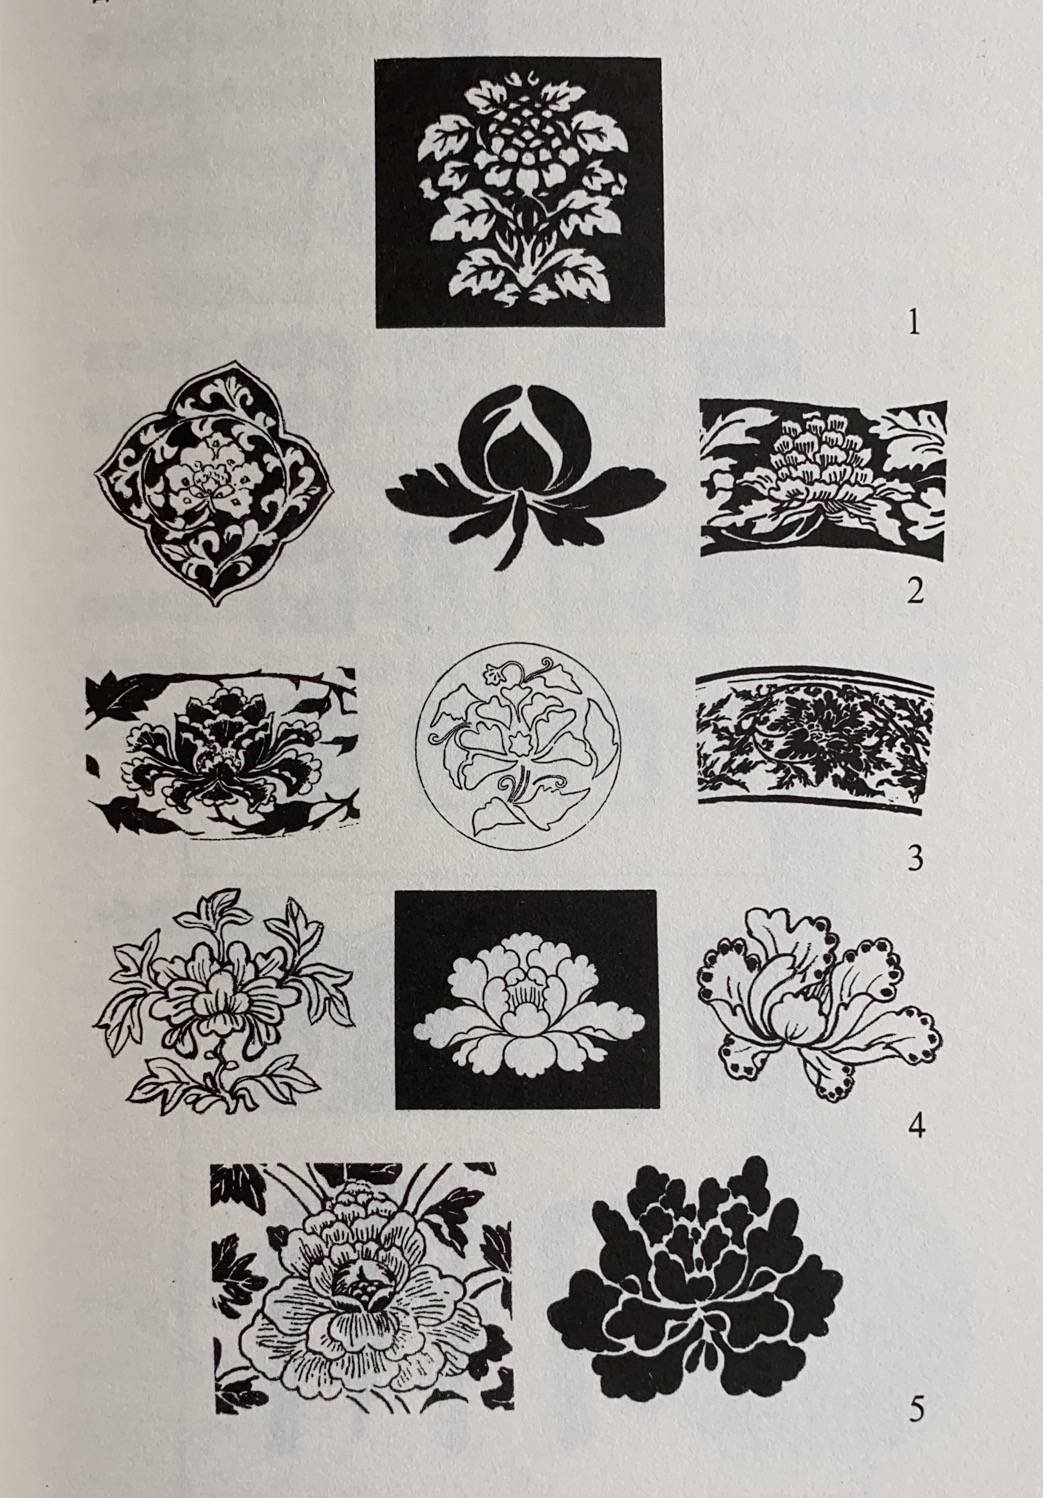 联合共鉴中国瓷器传统图案纹样赏析